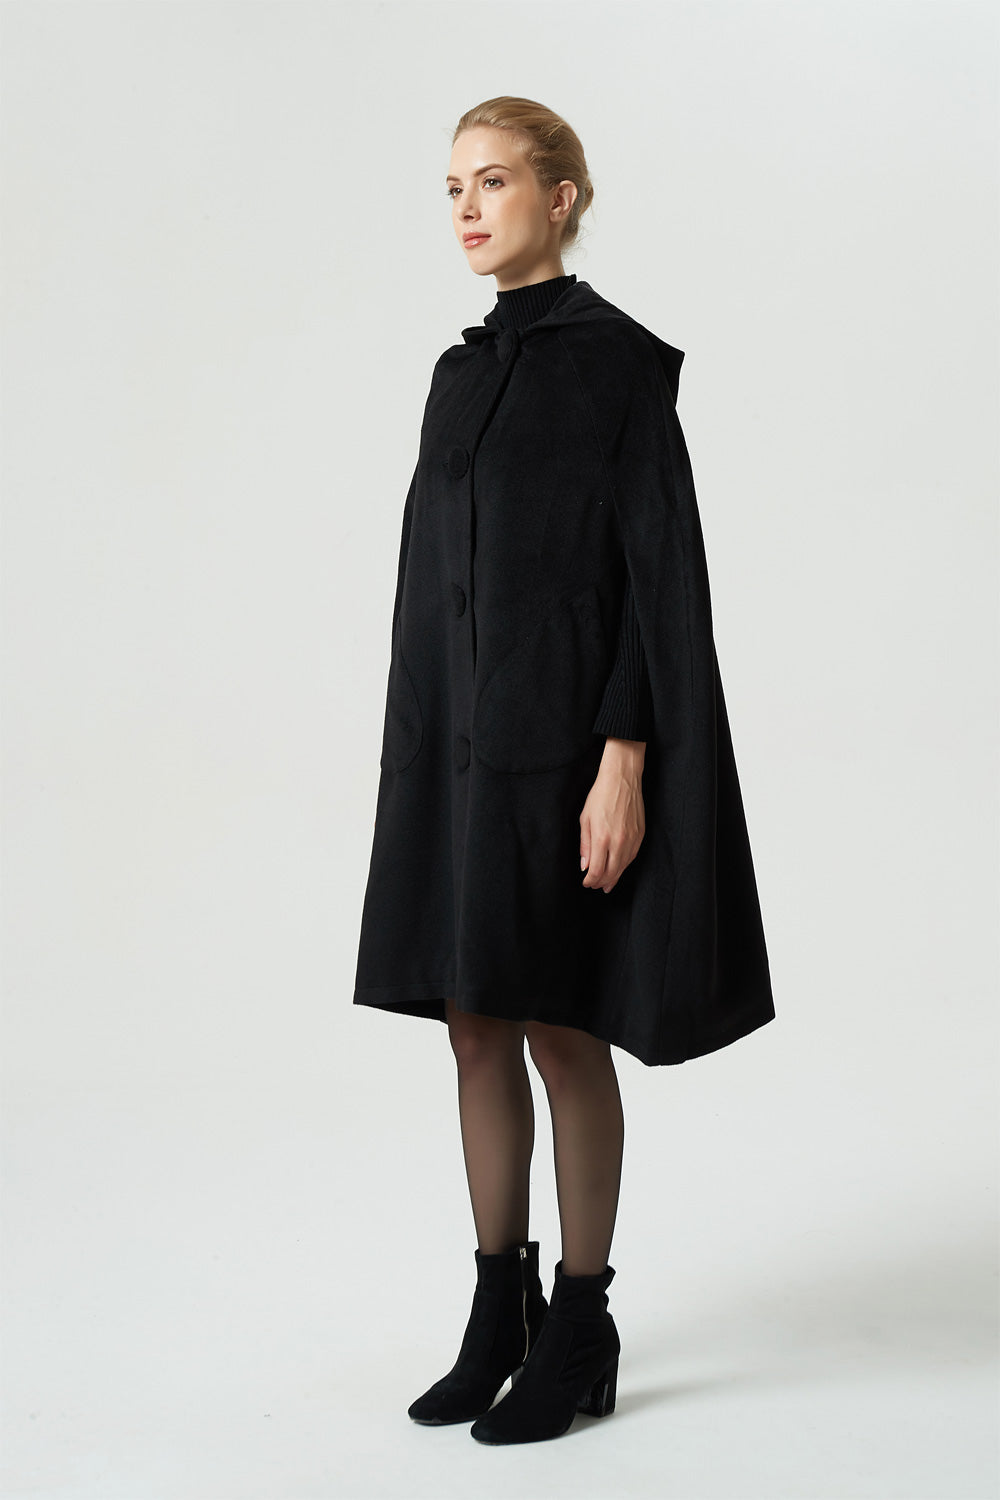 black wool cape coat, hooded warm cape, women winter outerwear 1952#